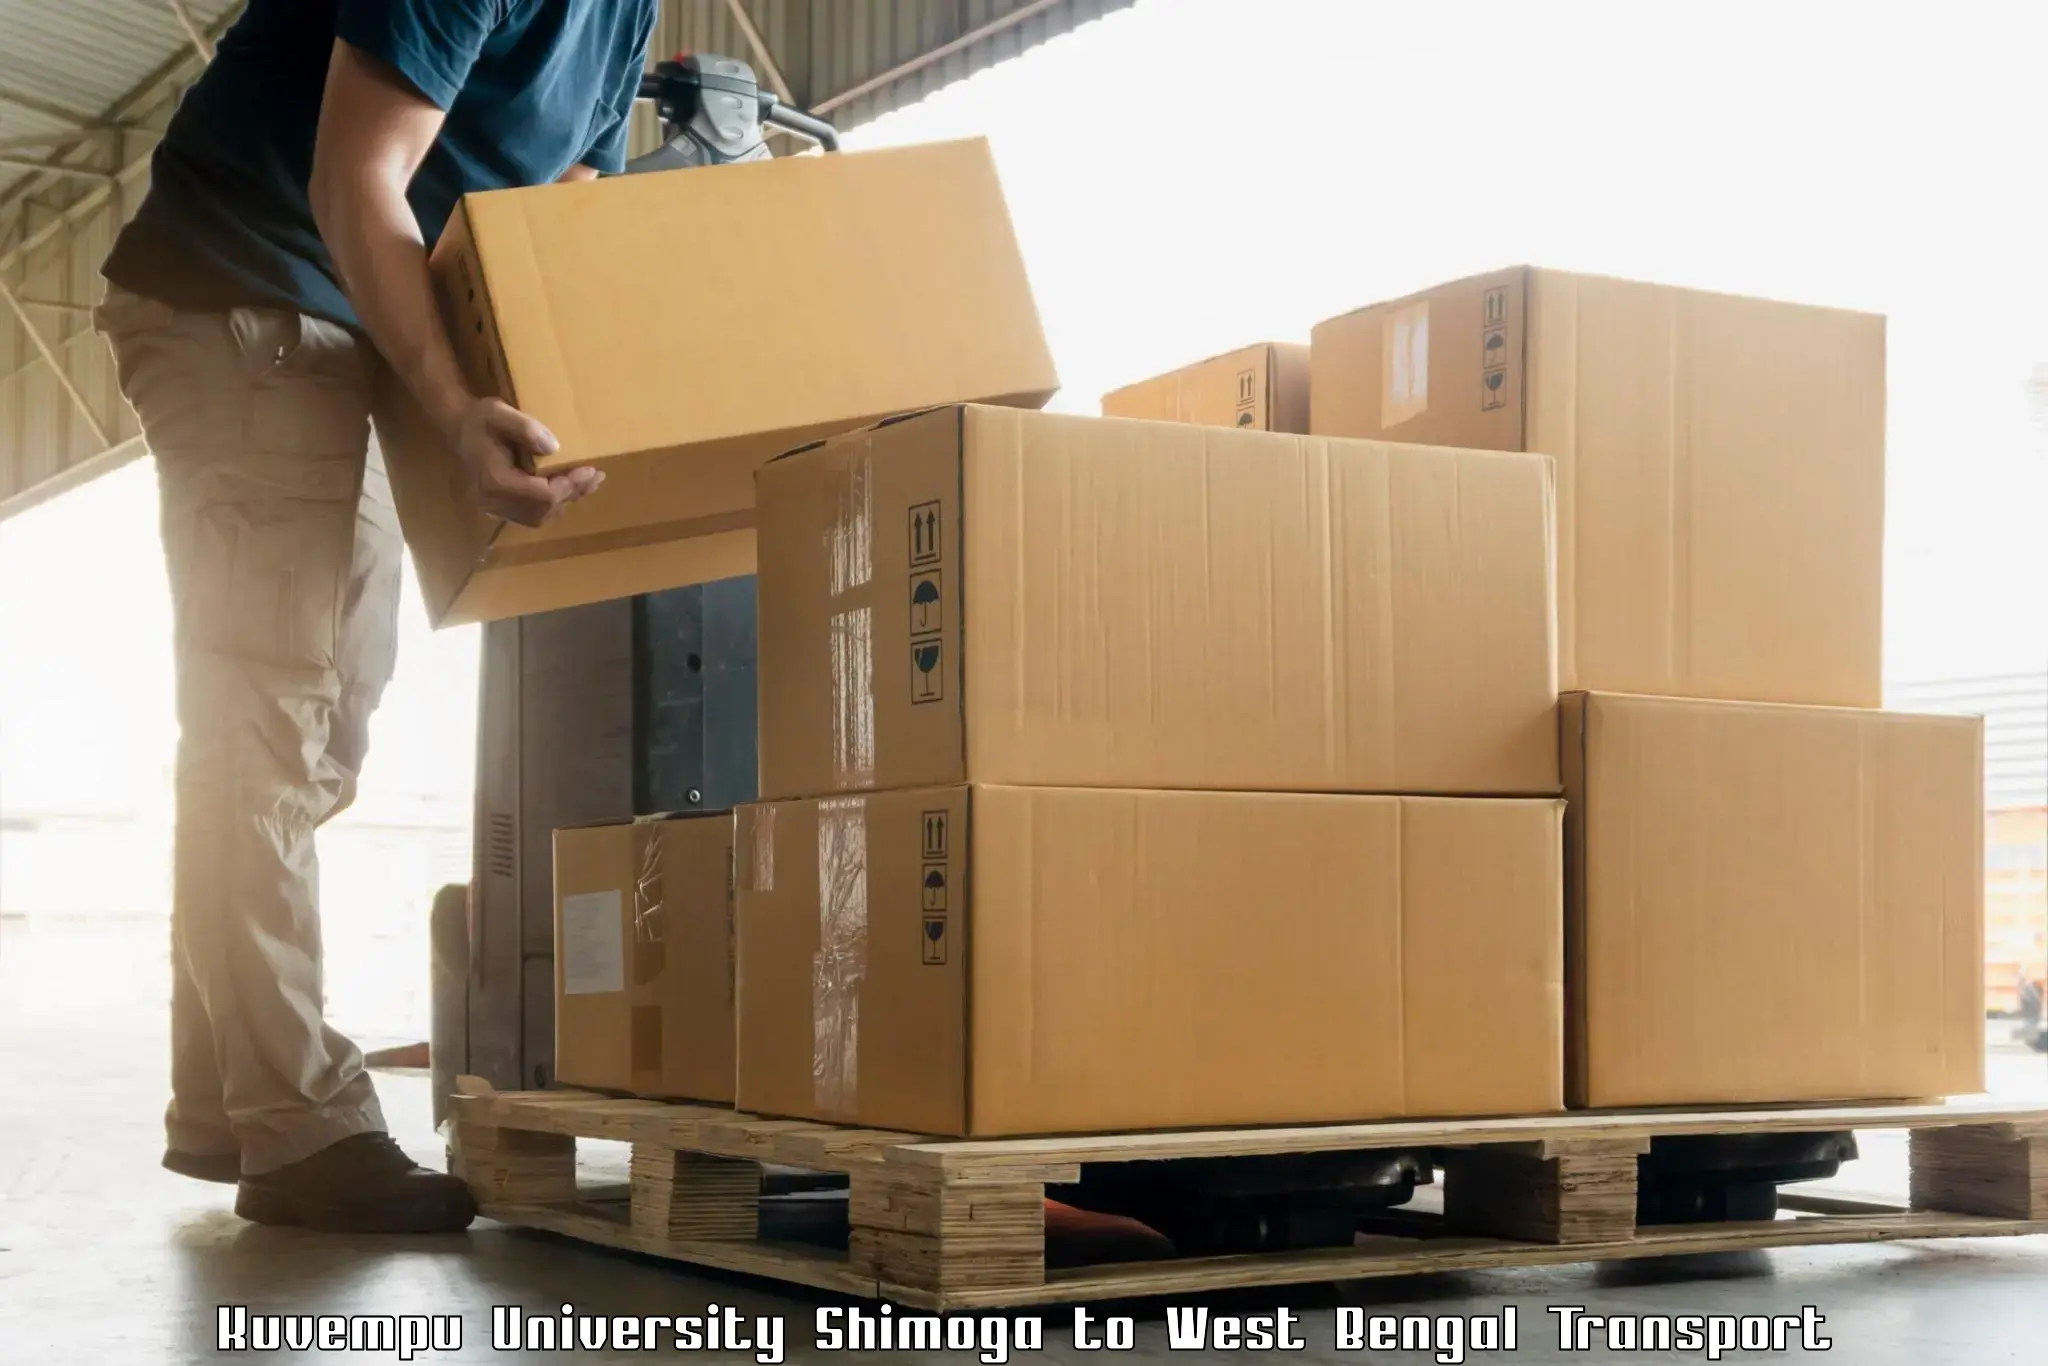 Cargo transport services Kuvempu University Shimoga to West Bengal